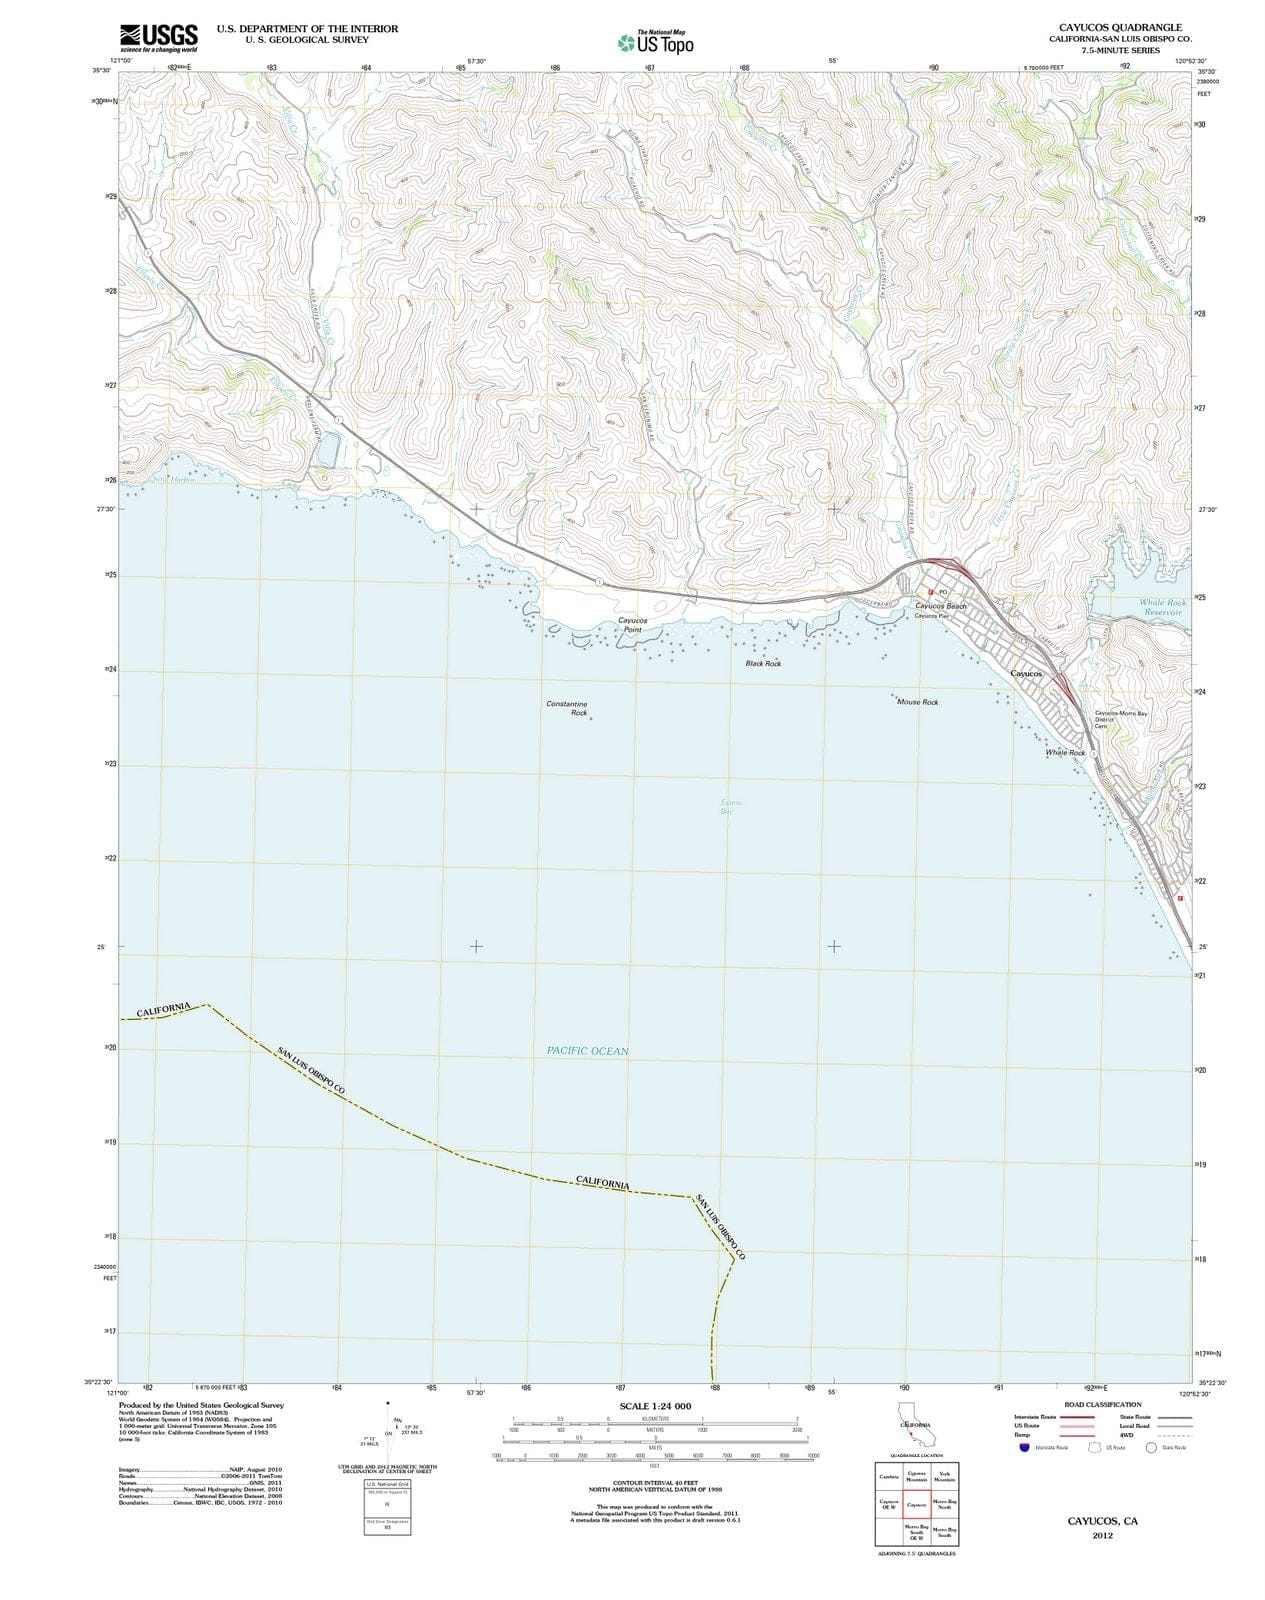 2012 Cayucos, CA - California - USGS Topographic Map